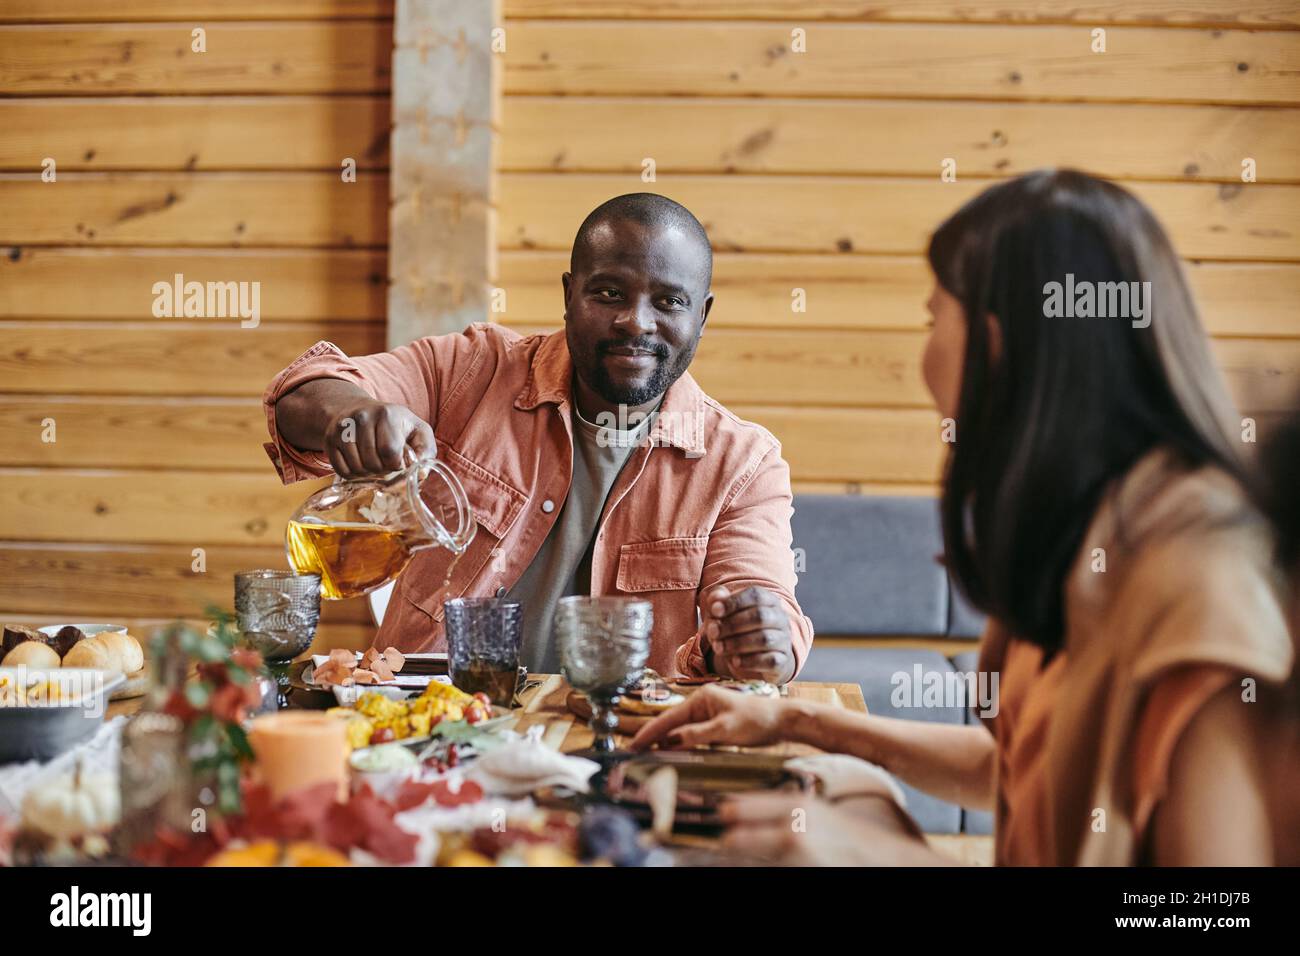 Il giovane africano che versa il succo nel bicchiere e parla con la donna al tavolo da pranzo Foto Stock